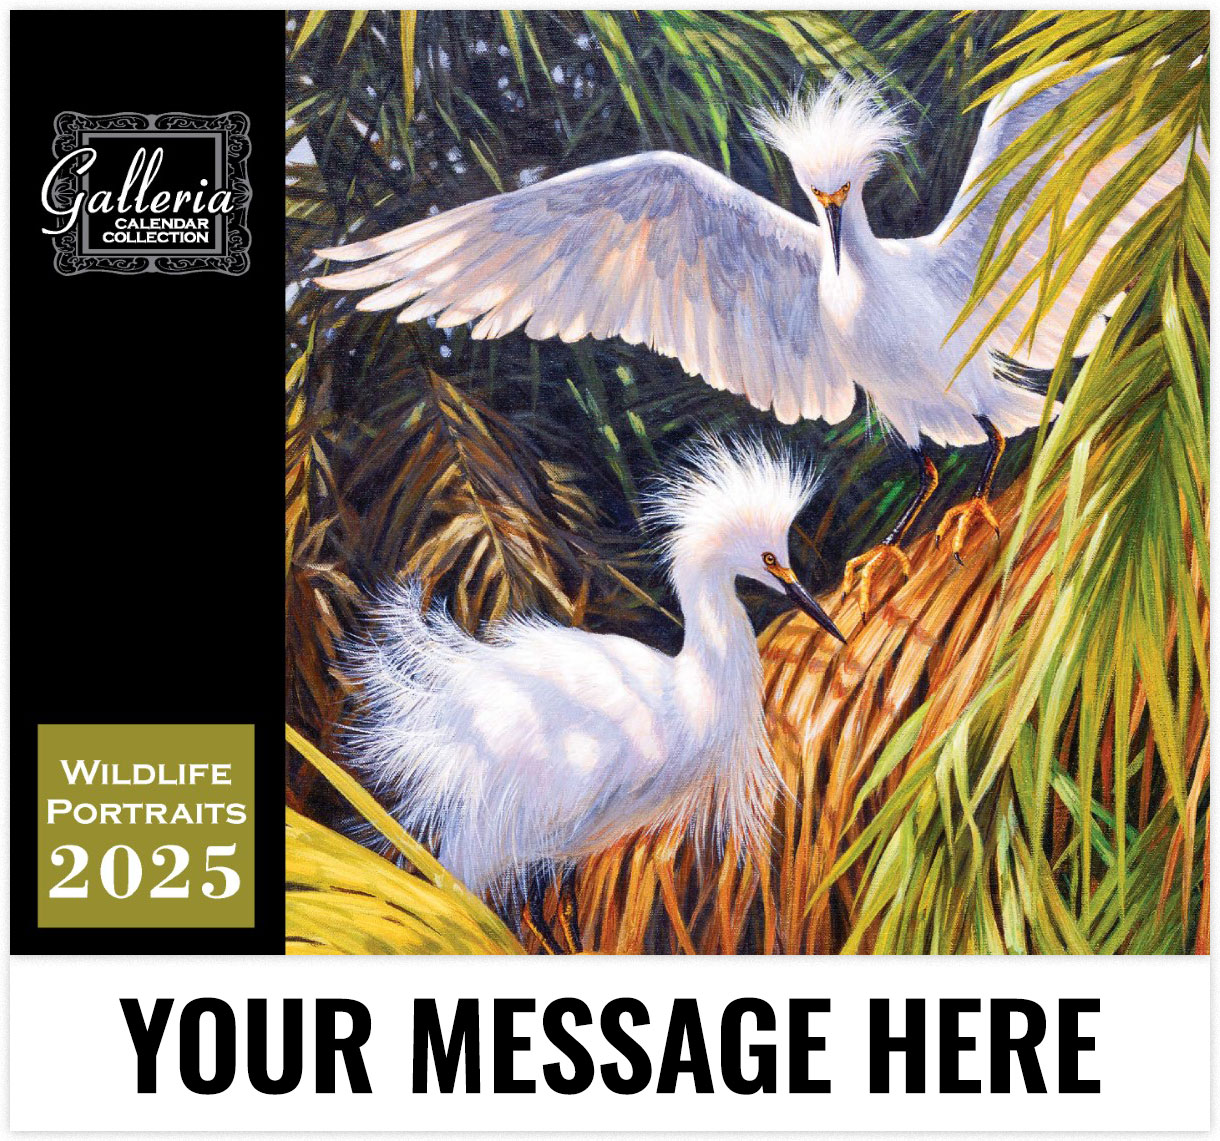 Galleria Wildlife Portraits - 2025